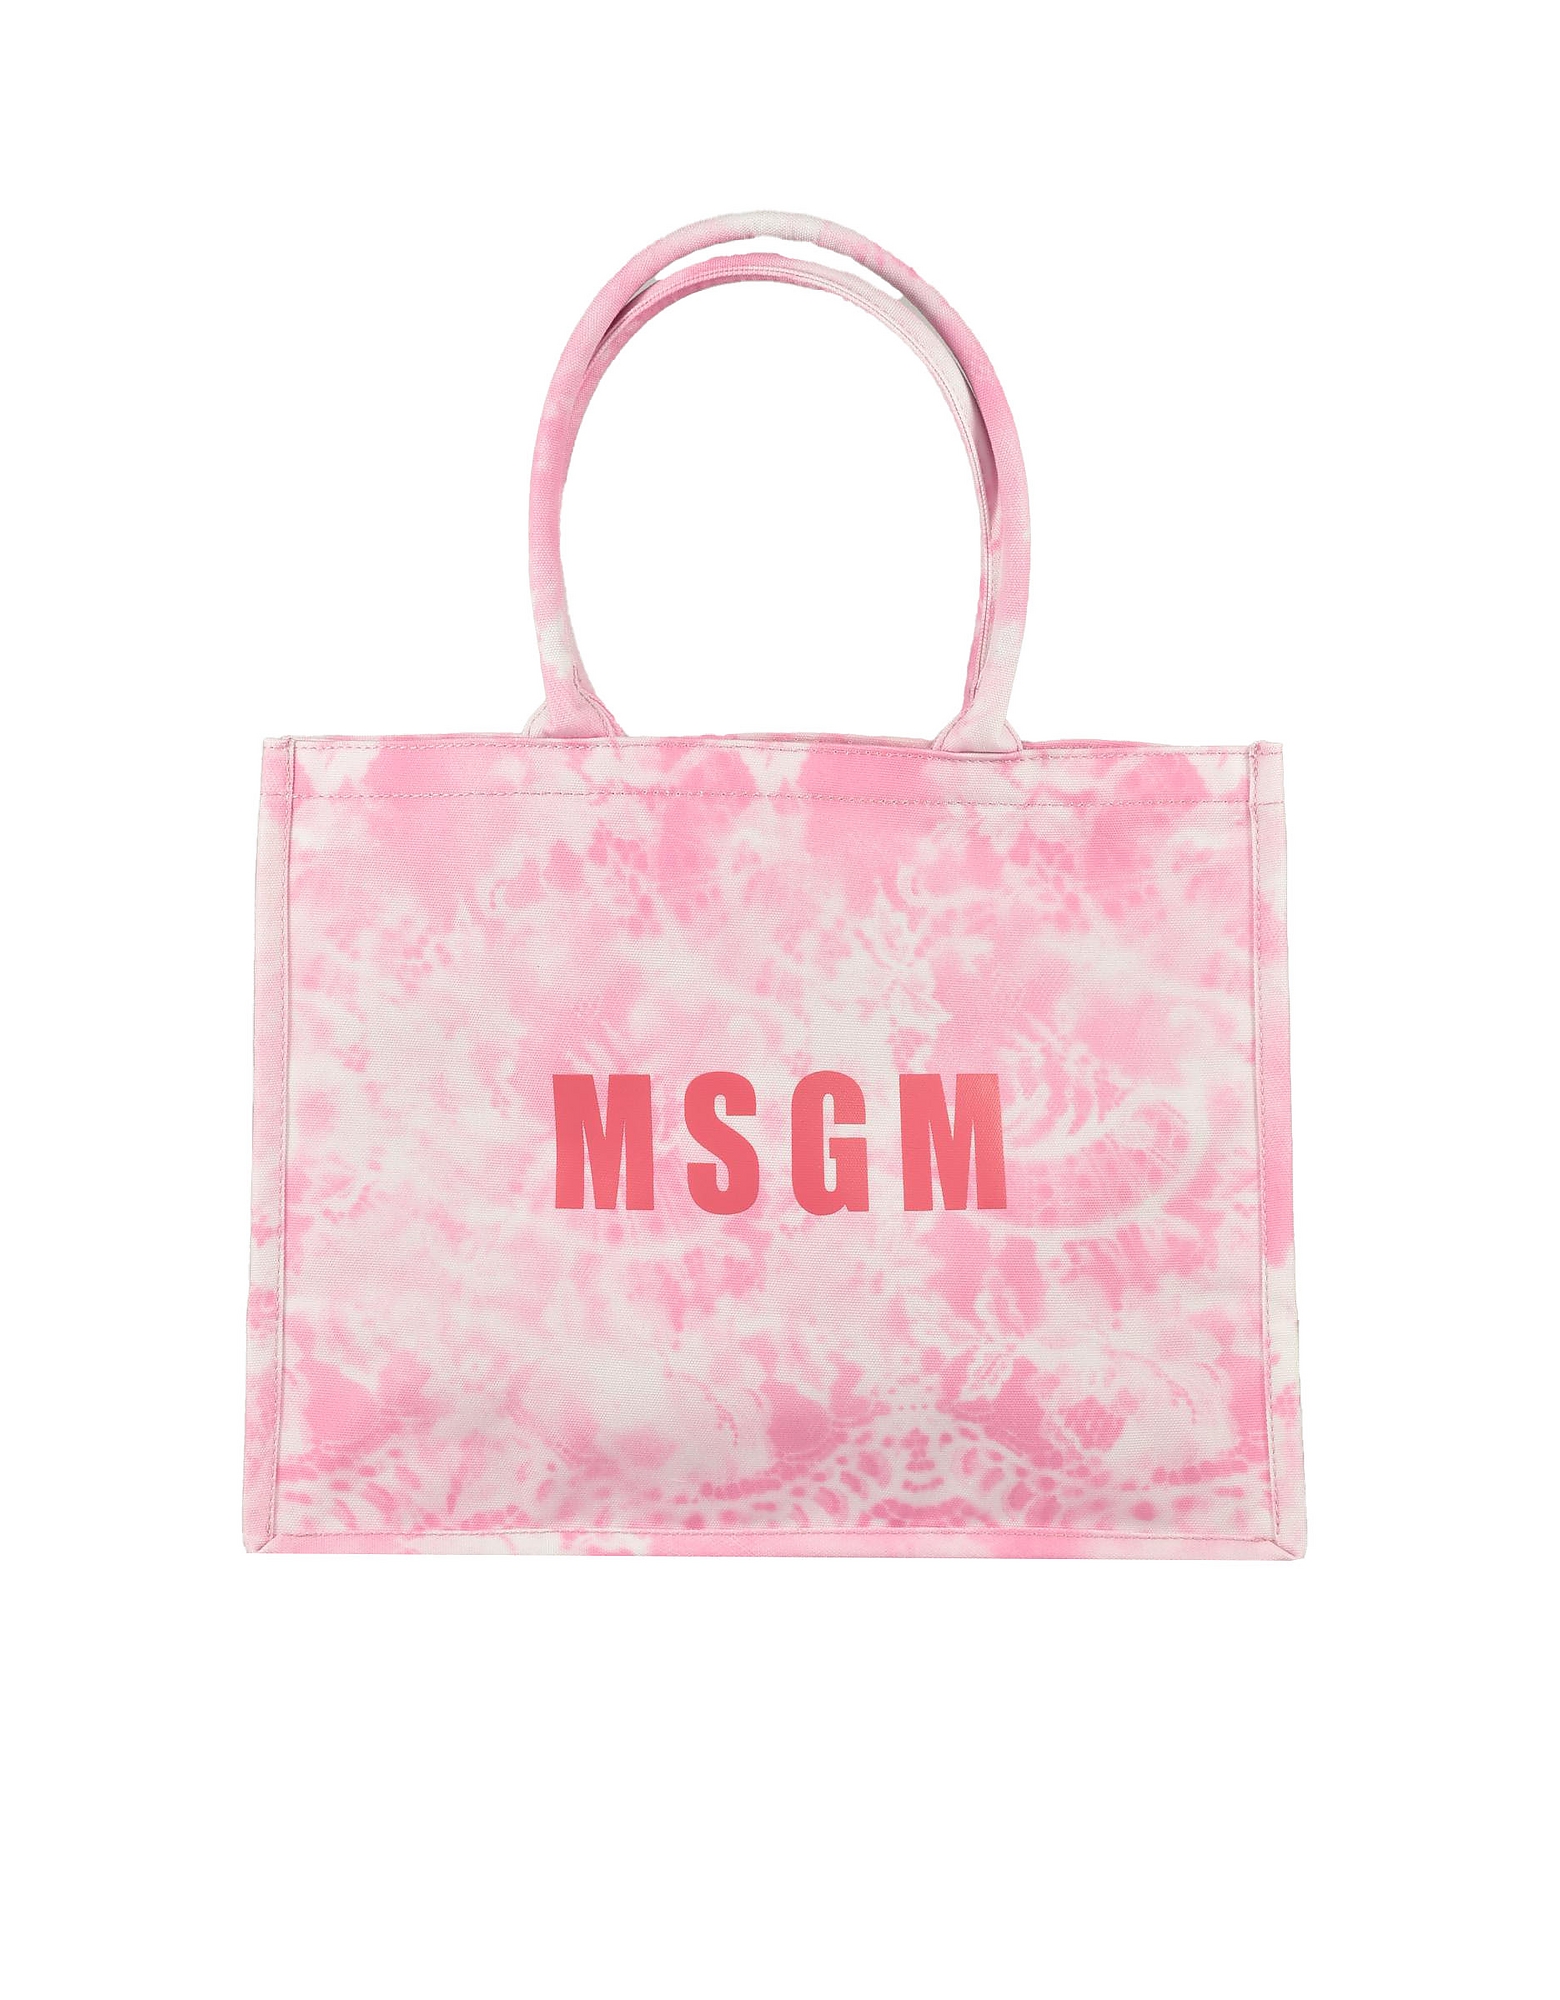 Msgm Designer Handbags Women's Pink Handbag